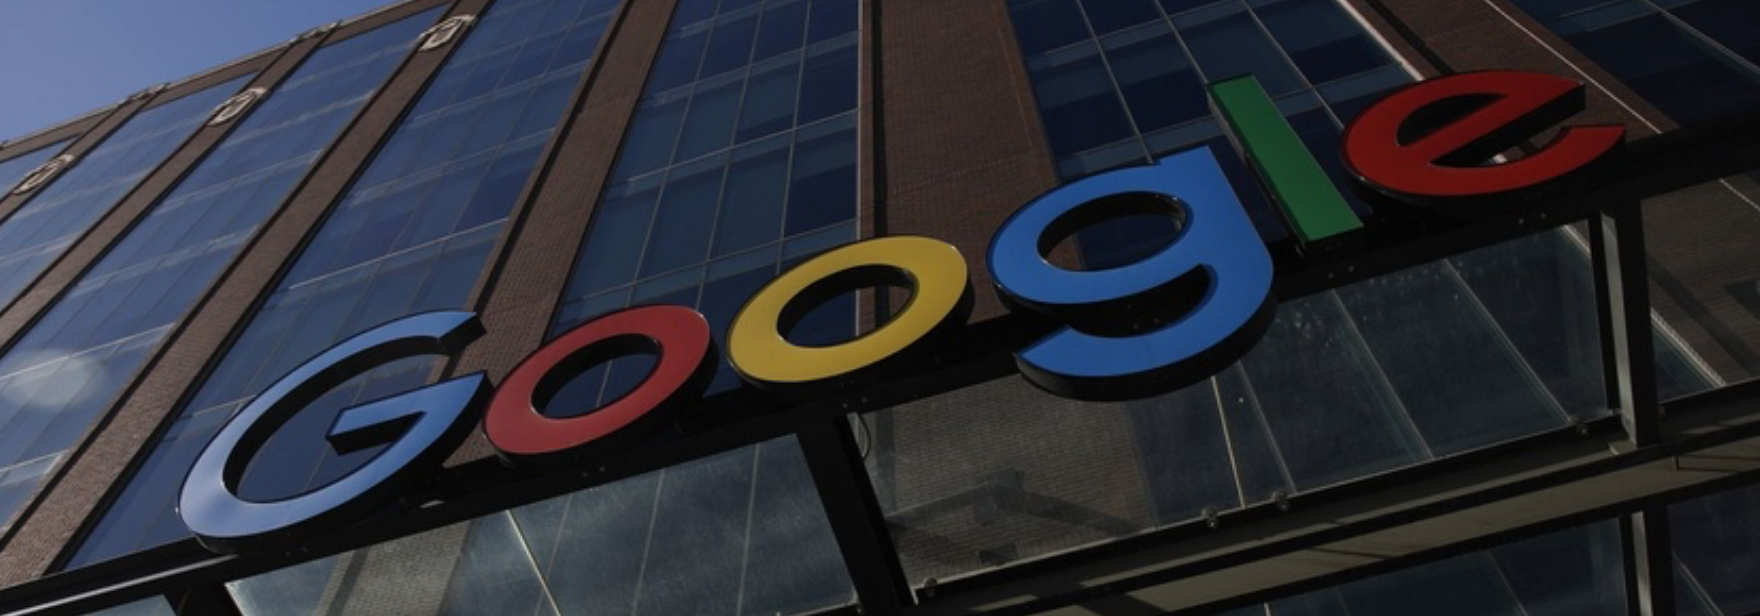 Google сообщила, что не будет удалять запрещённый контент, если проиграет в суде «Царьграду». За это компанию могут заблокировать в России